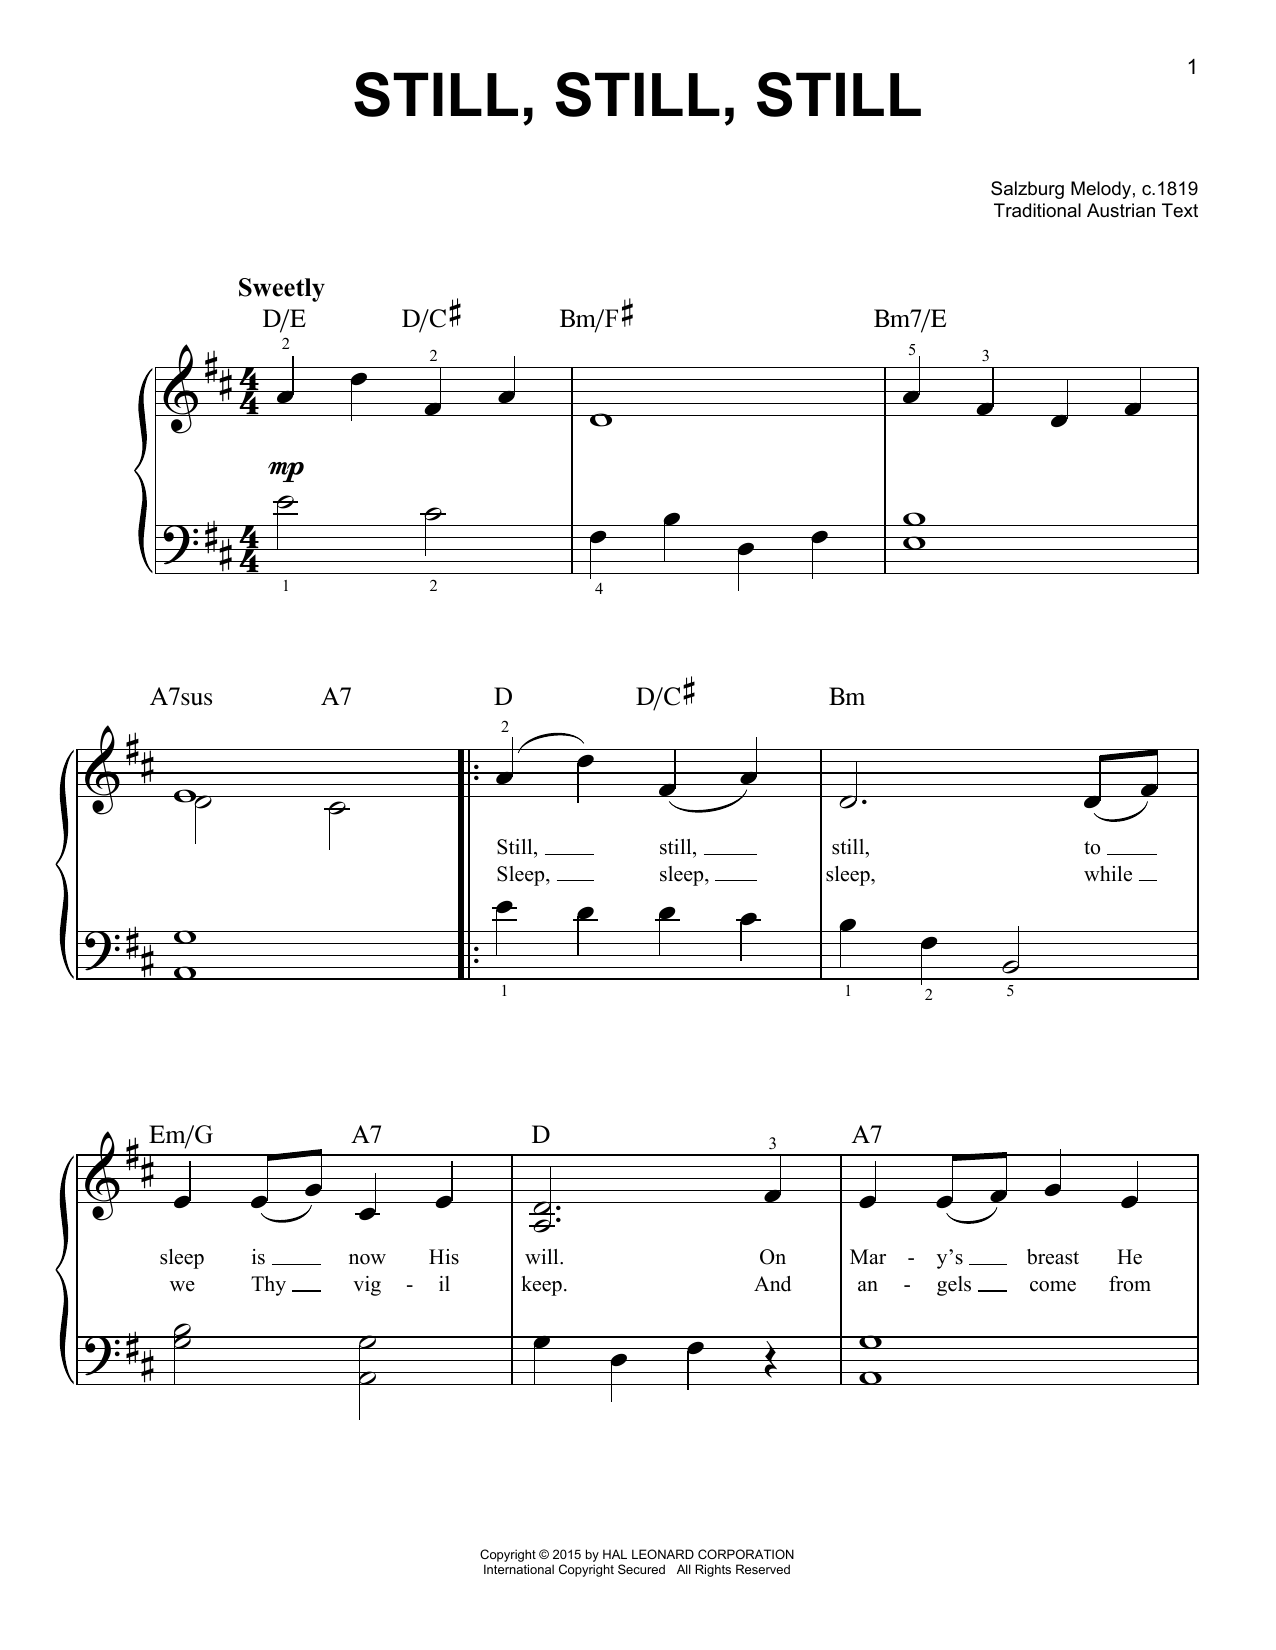 Salzburg Melody, c.1819 Still, Still, Still sheet music notes and chords arranged for Clarinet Duet